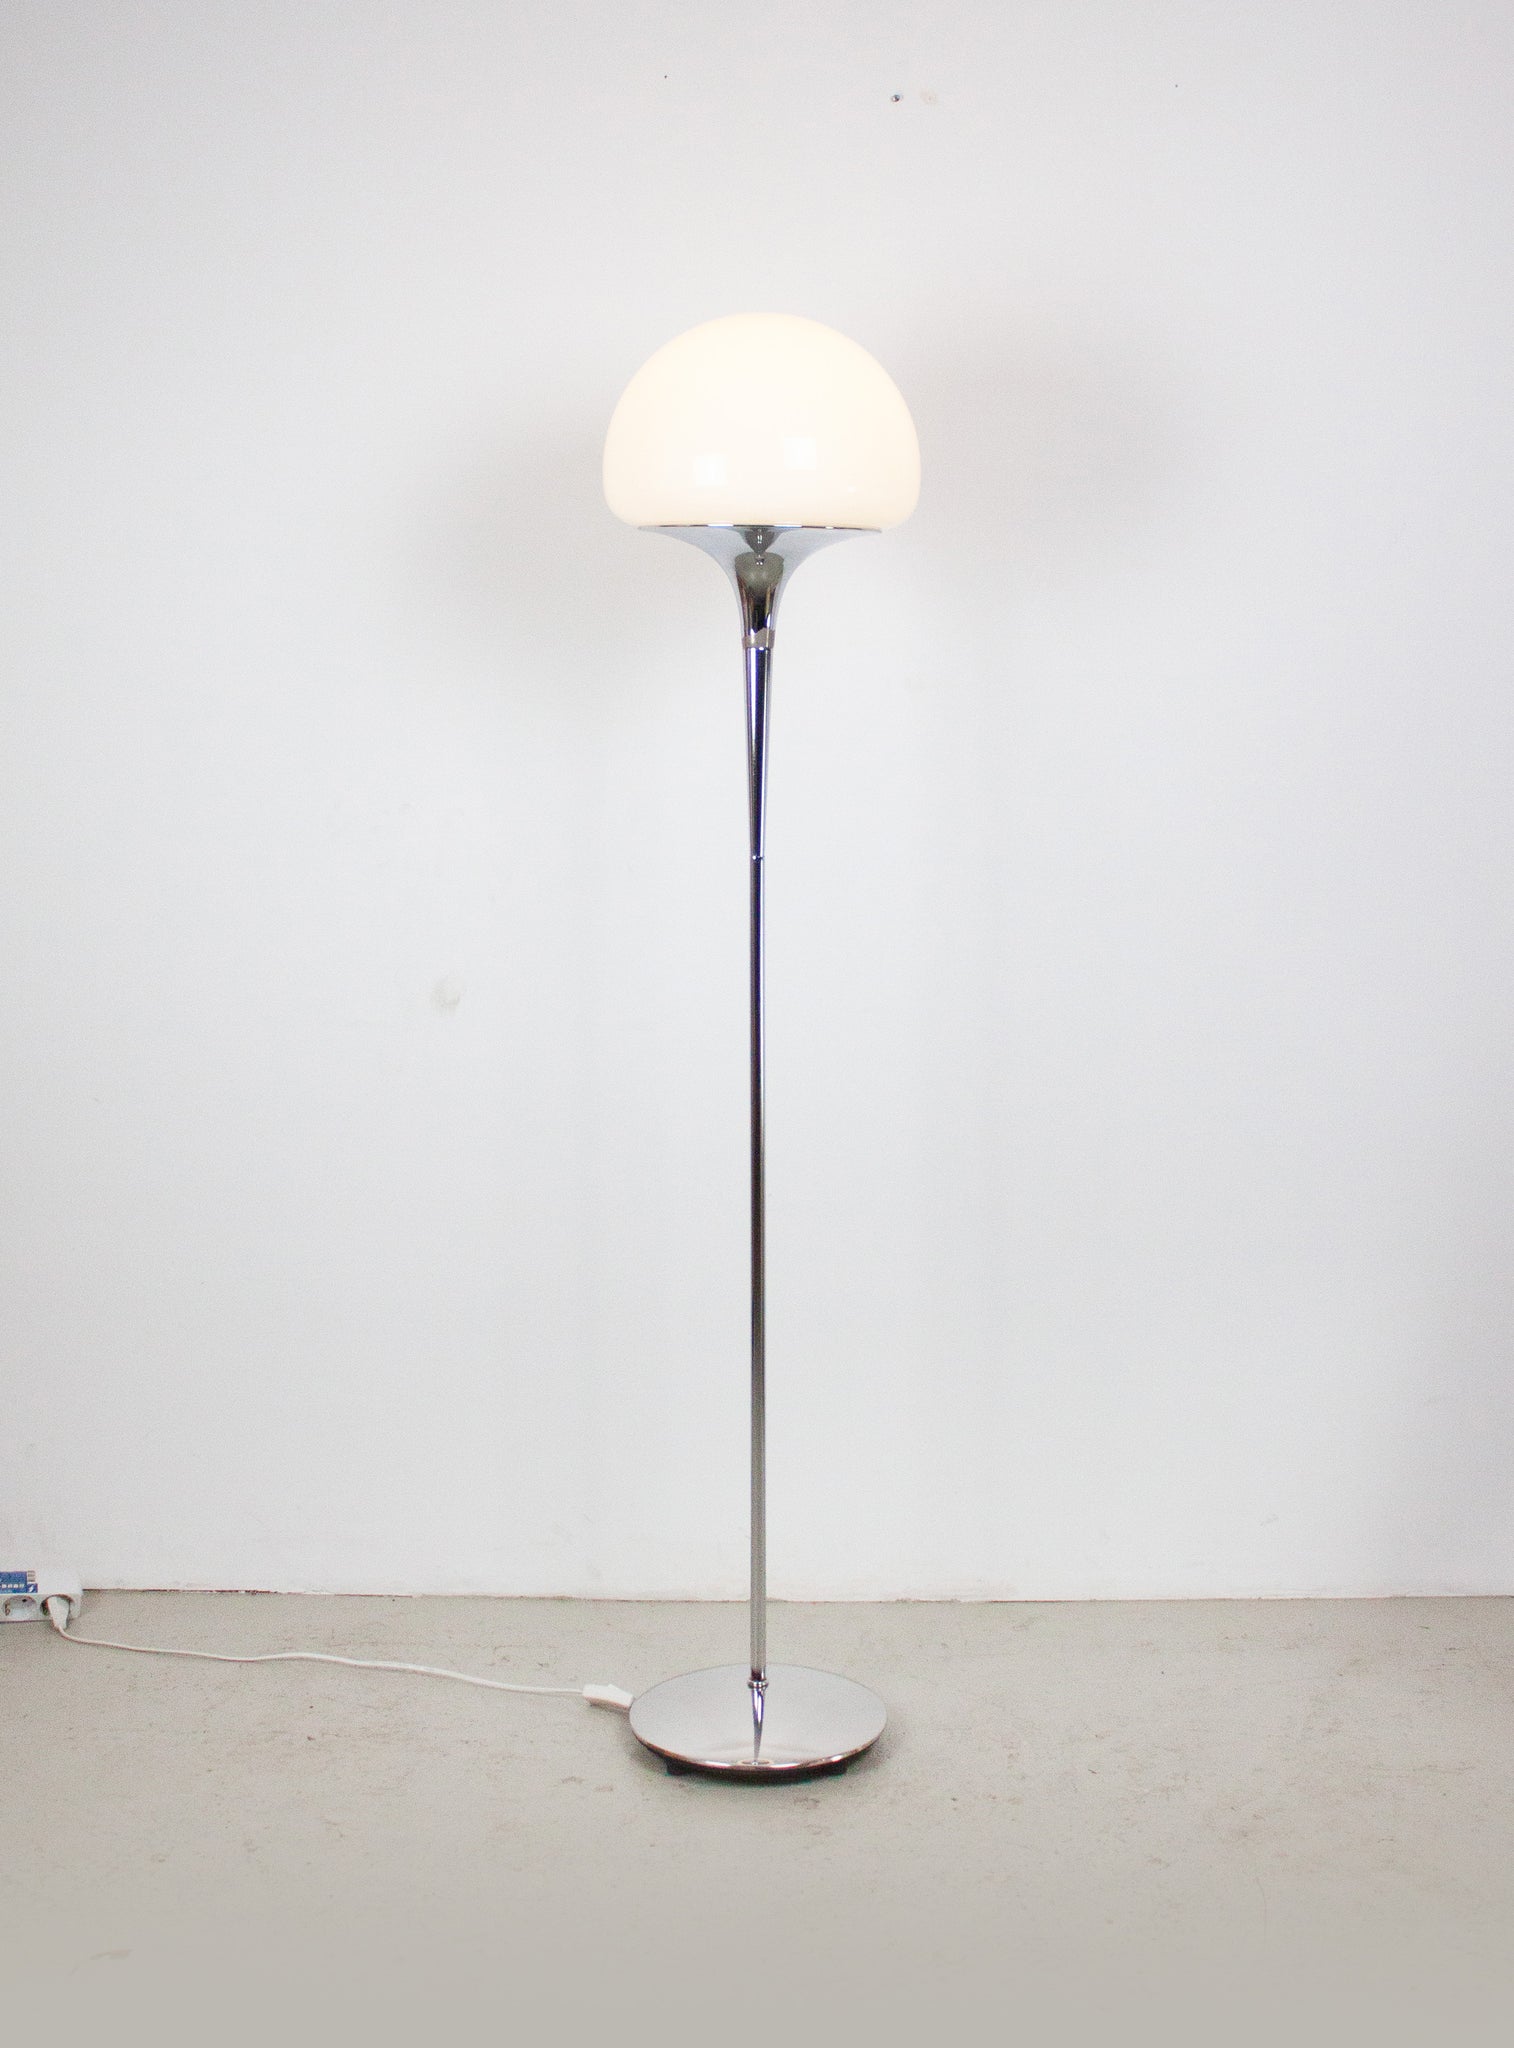 Reggiani Opaline Glass Floor Lamp by Goffredo Reggiani